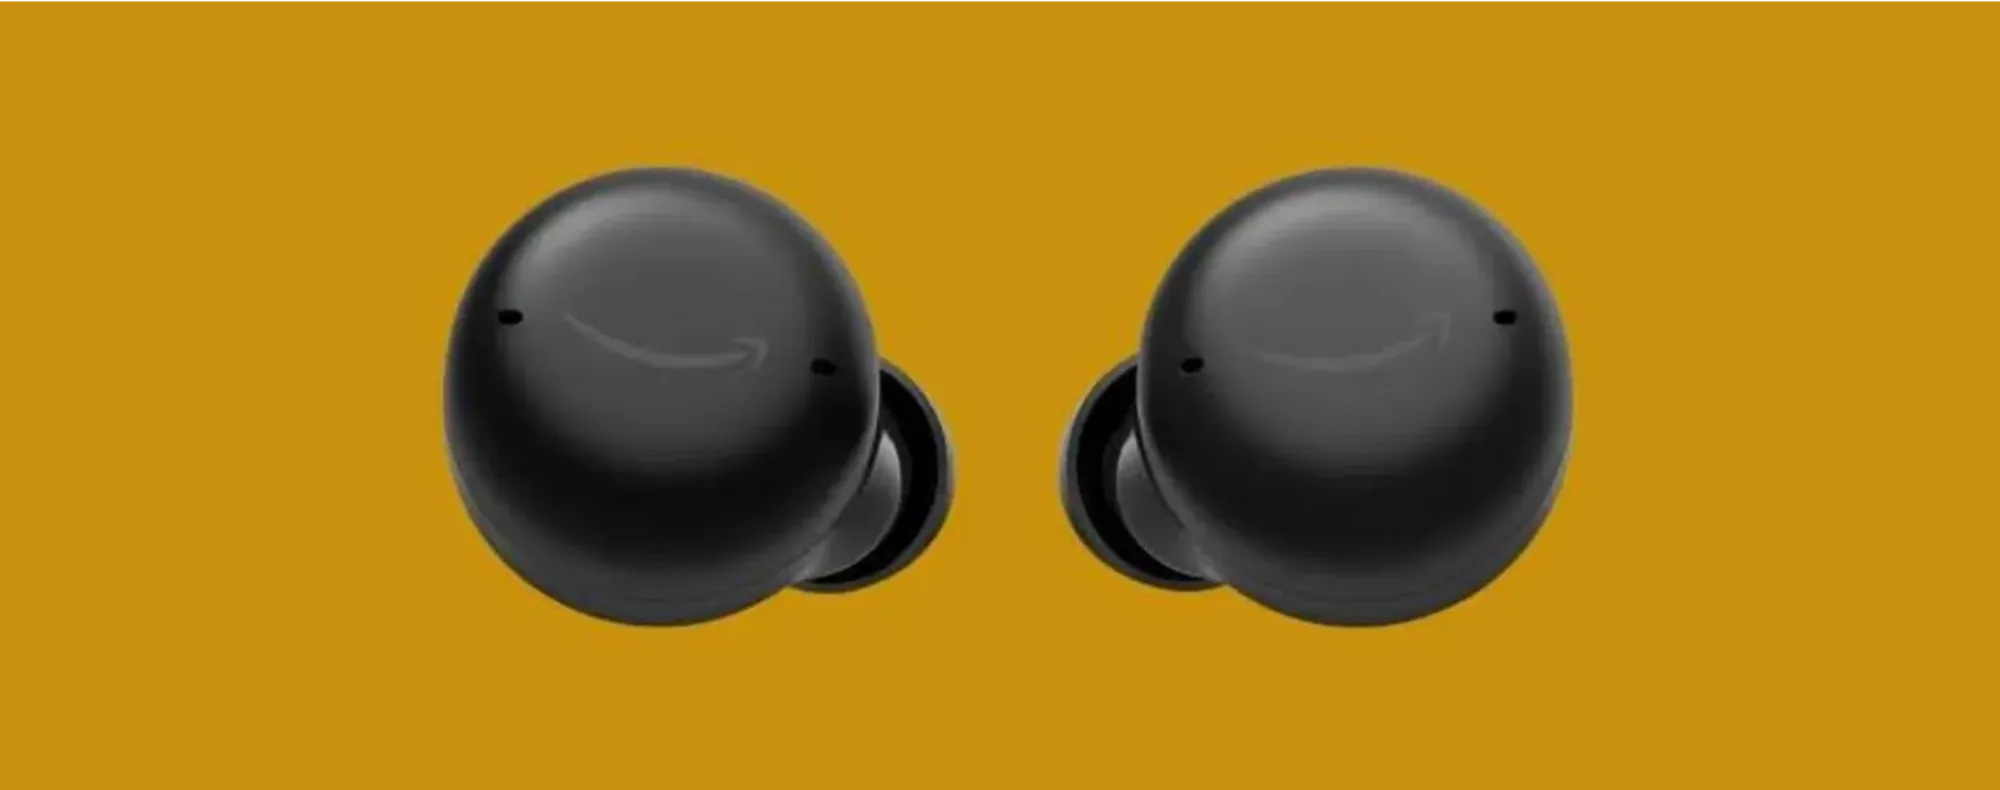 Fone de ouvido Amazon Echo Buds 2 é bom? Conheça mais sobre o modelo